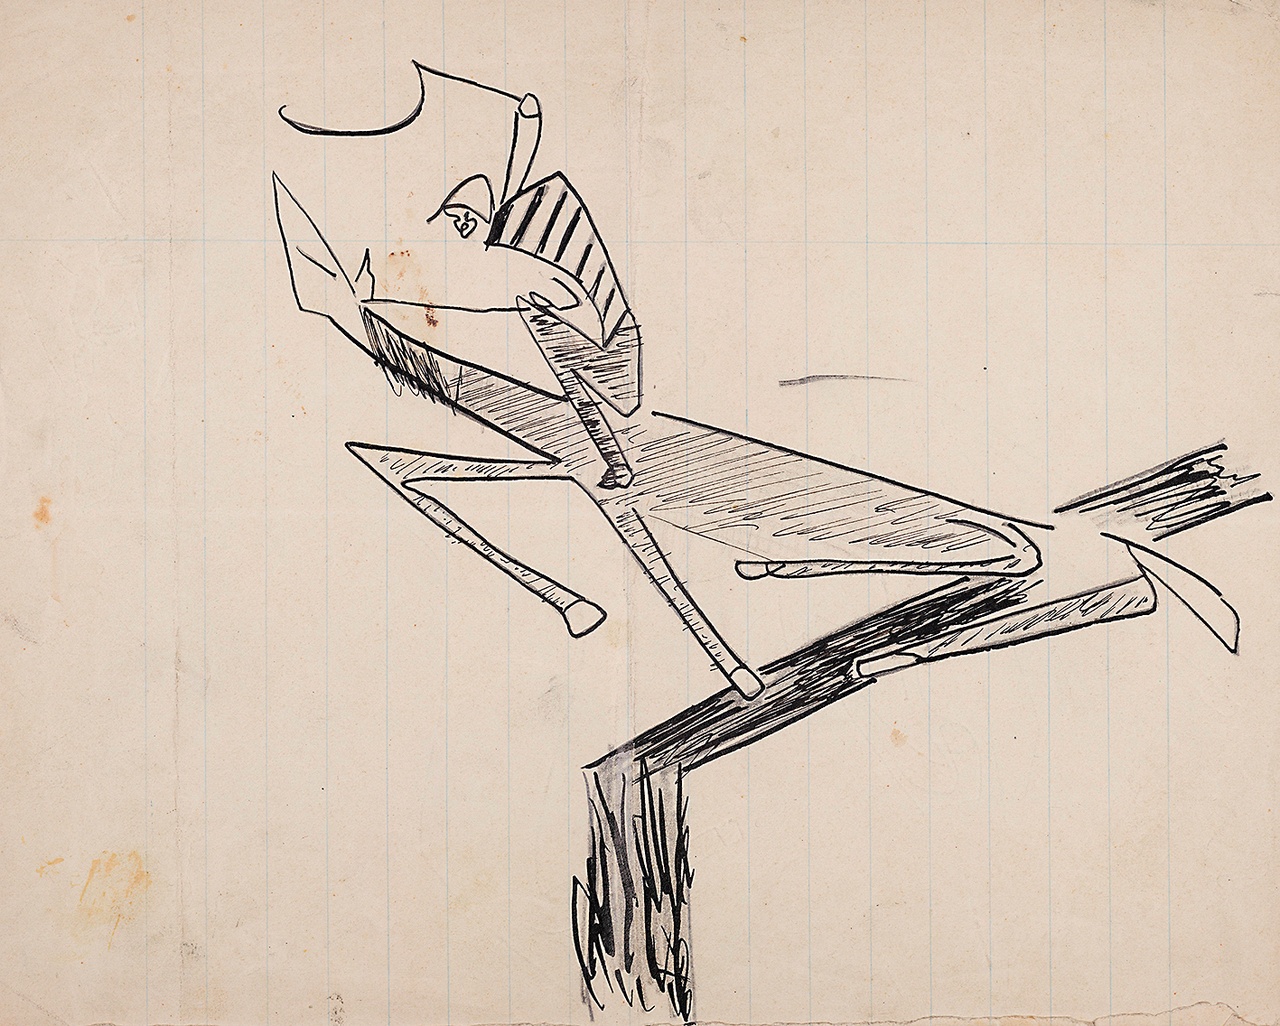 Franz Kafka, Zeichnung einer reitenden Figur / Drawing of a figure on horseback, ca. 1903–07